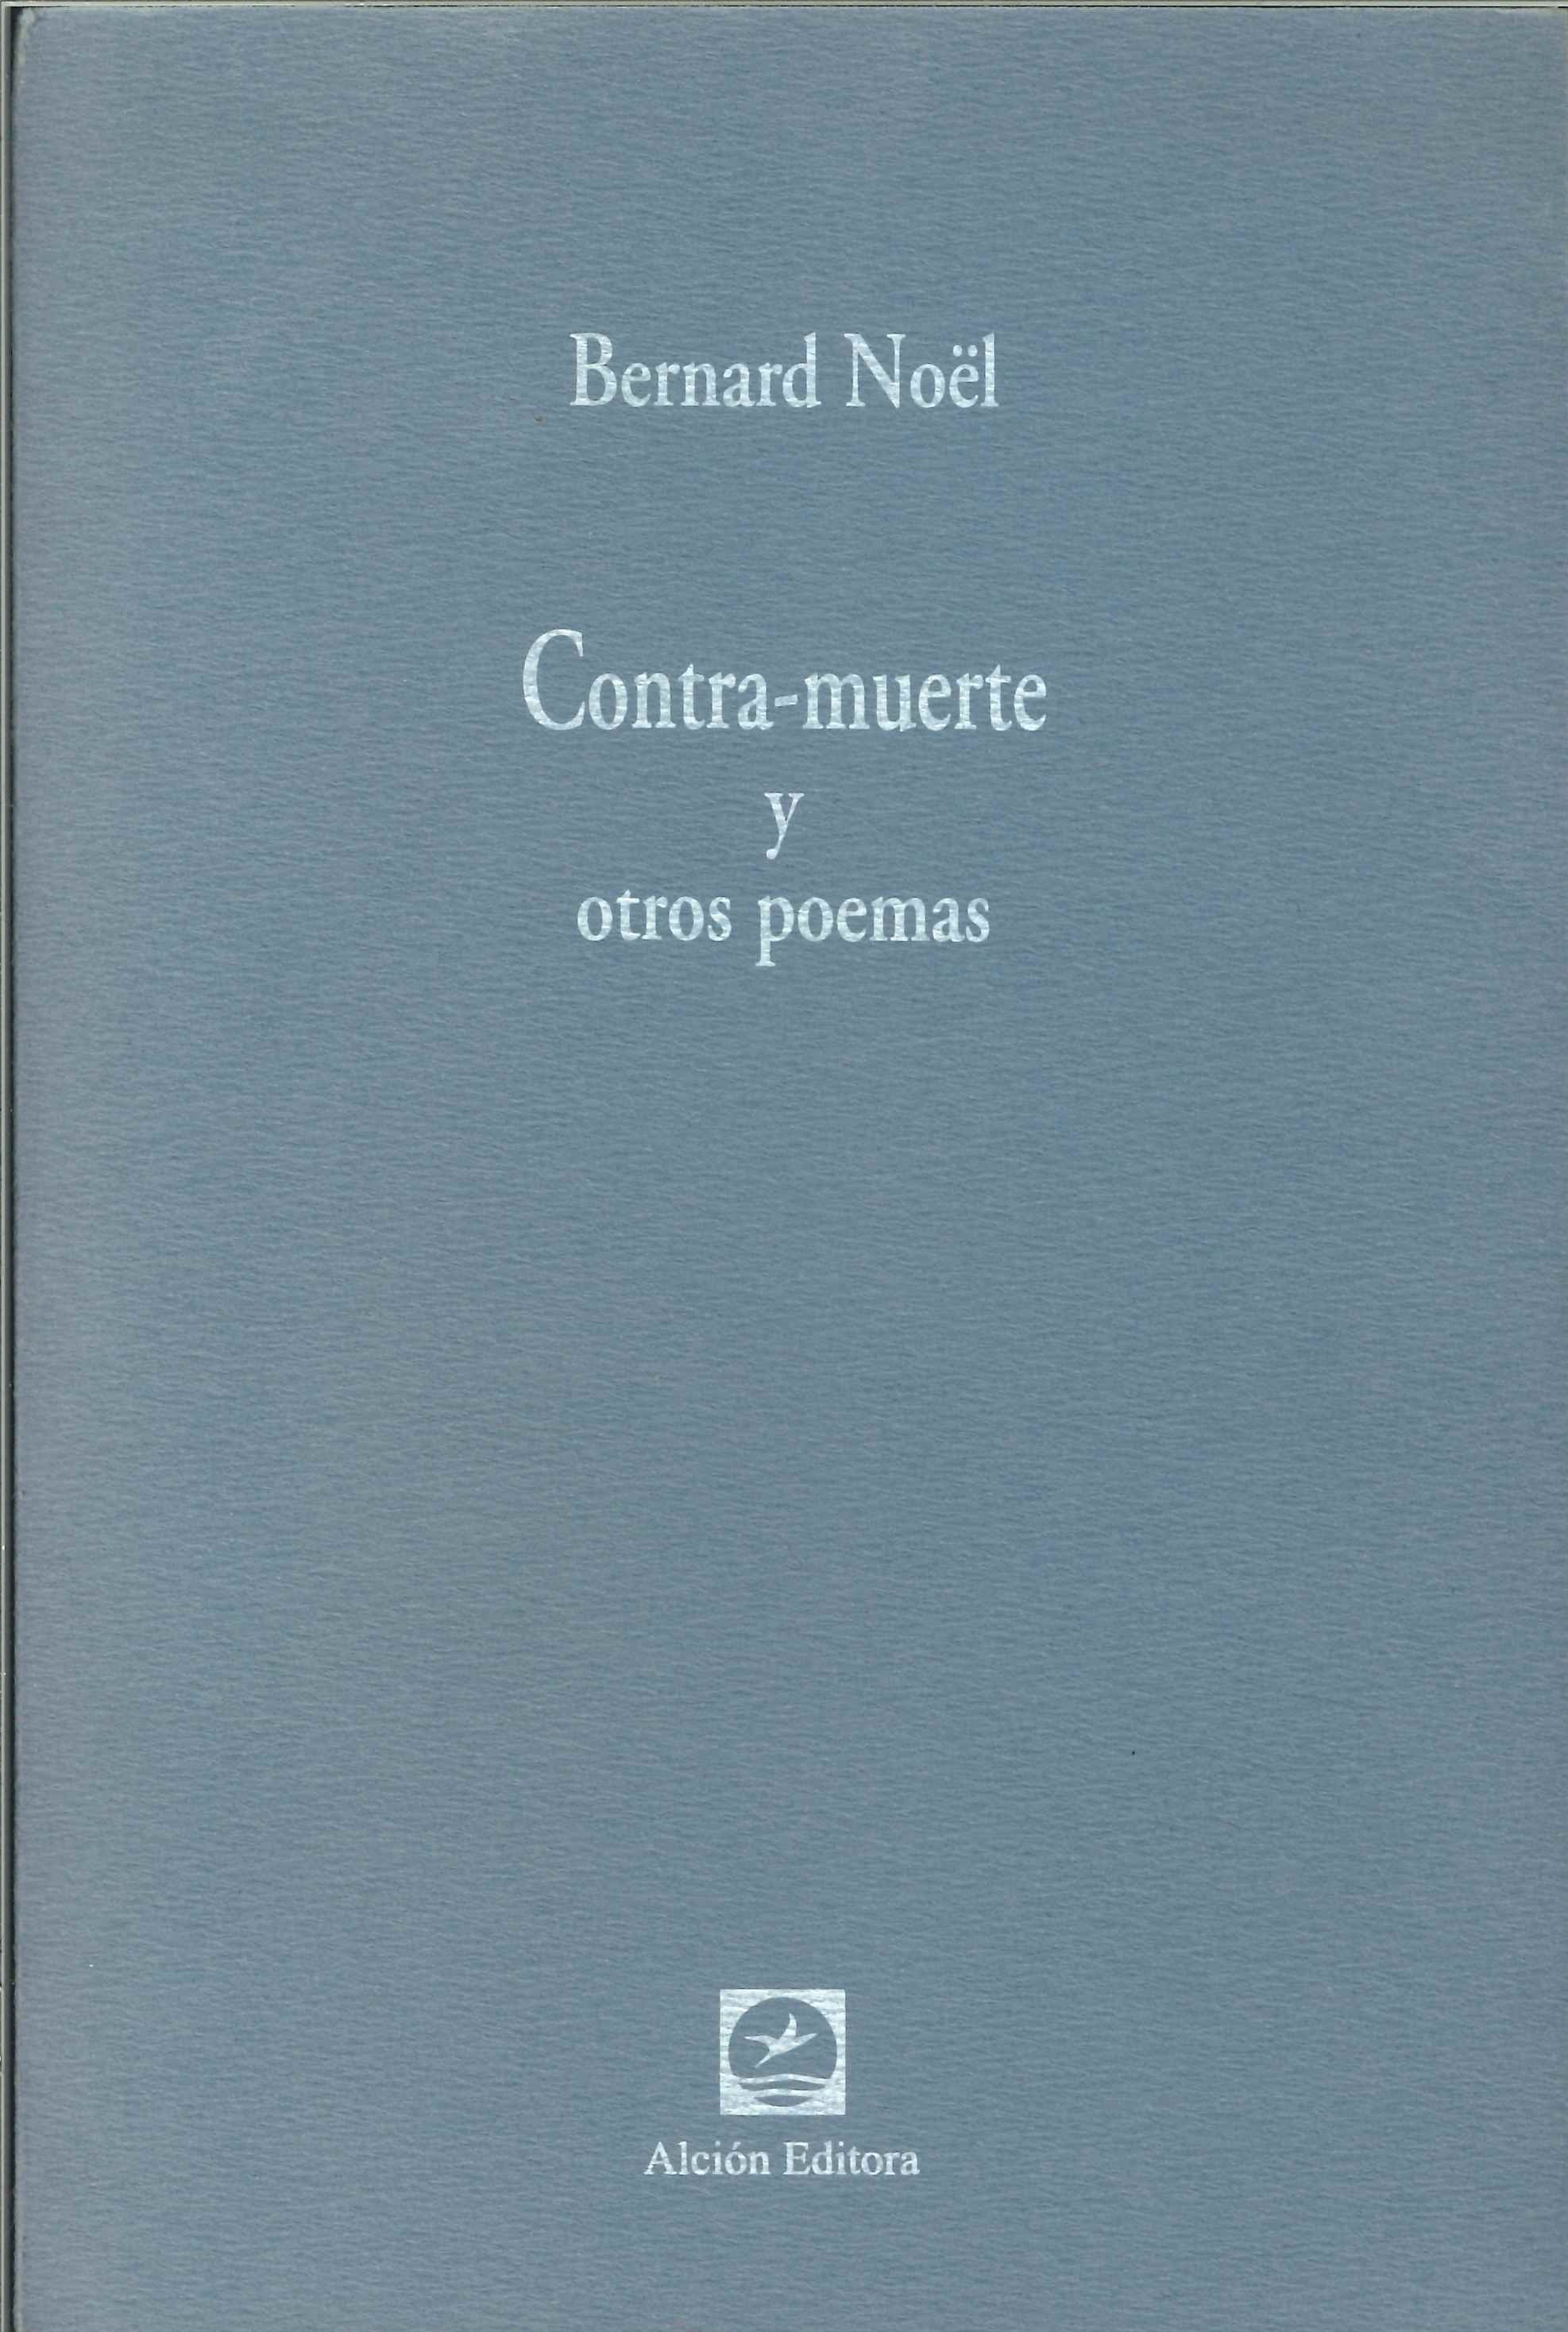 Bernard Nöel: Contra-muerte y otros poemas